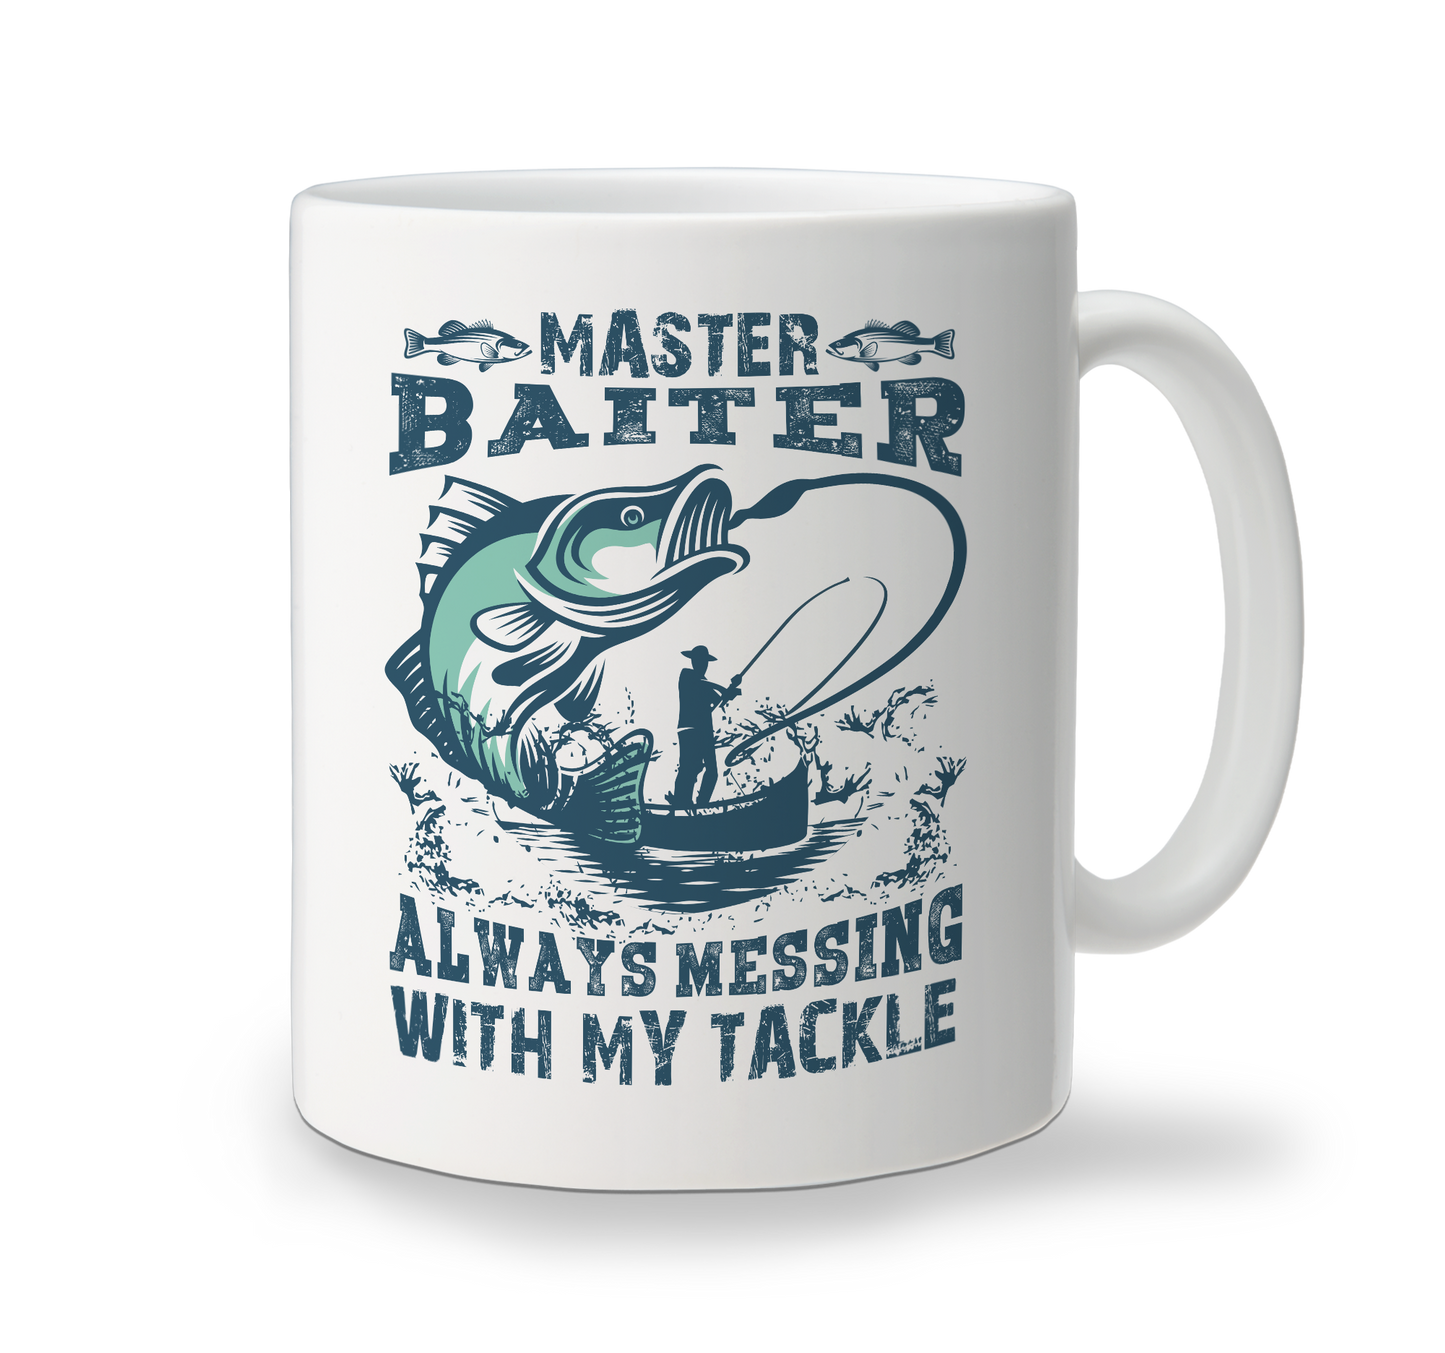 Ceramic Mug - Master Baiter